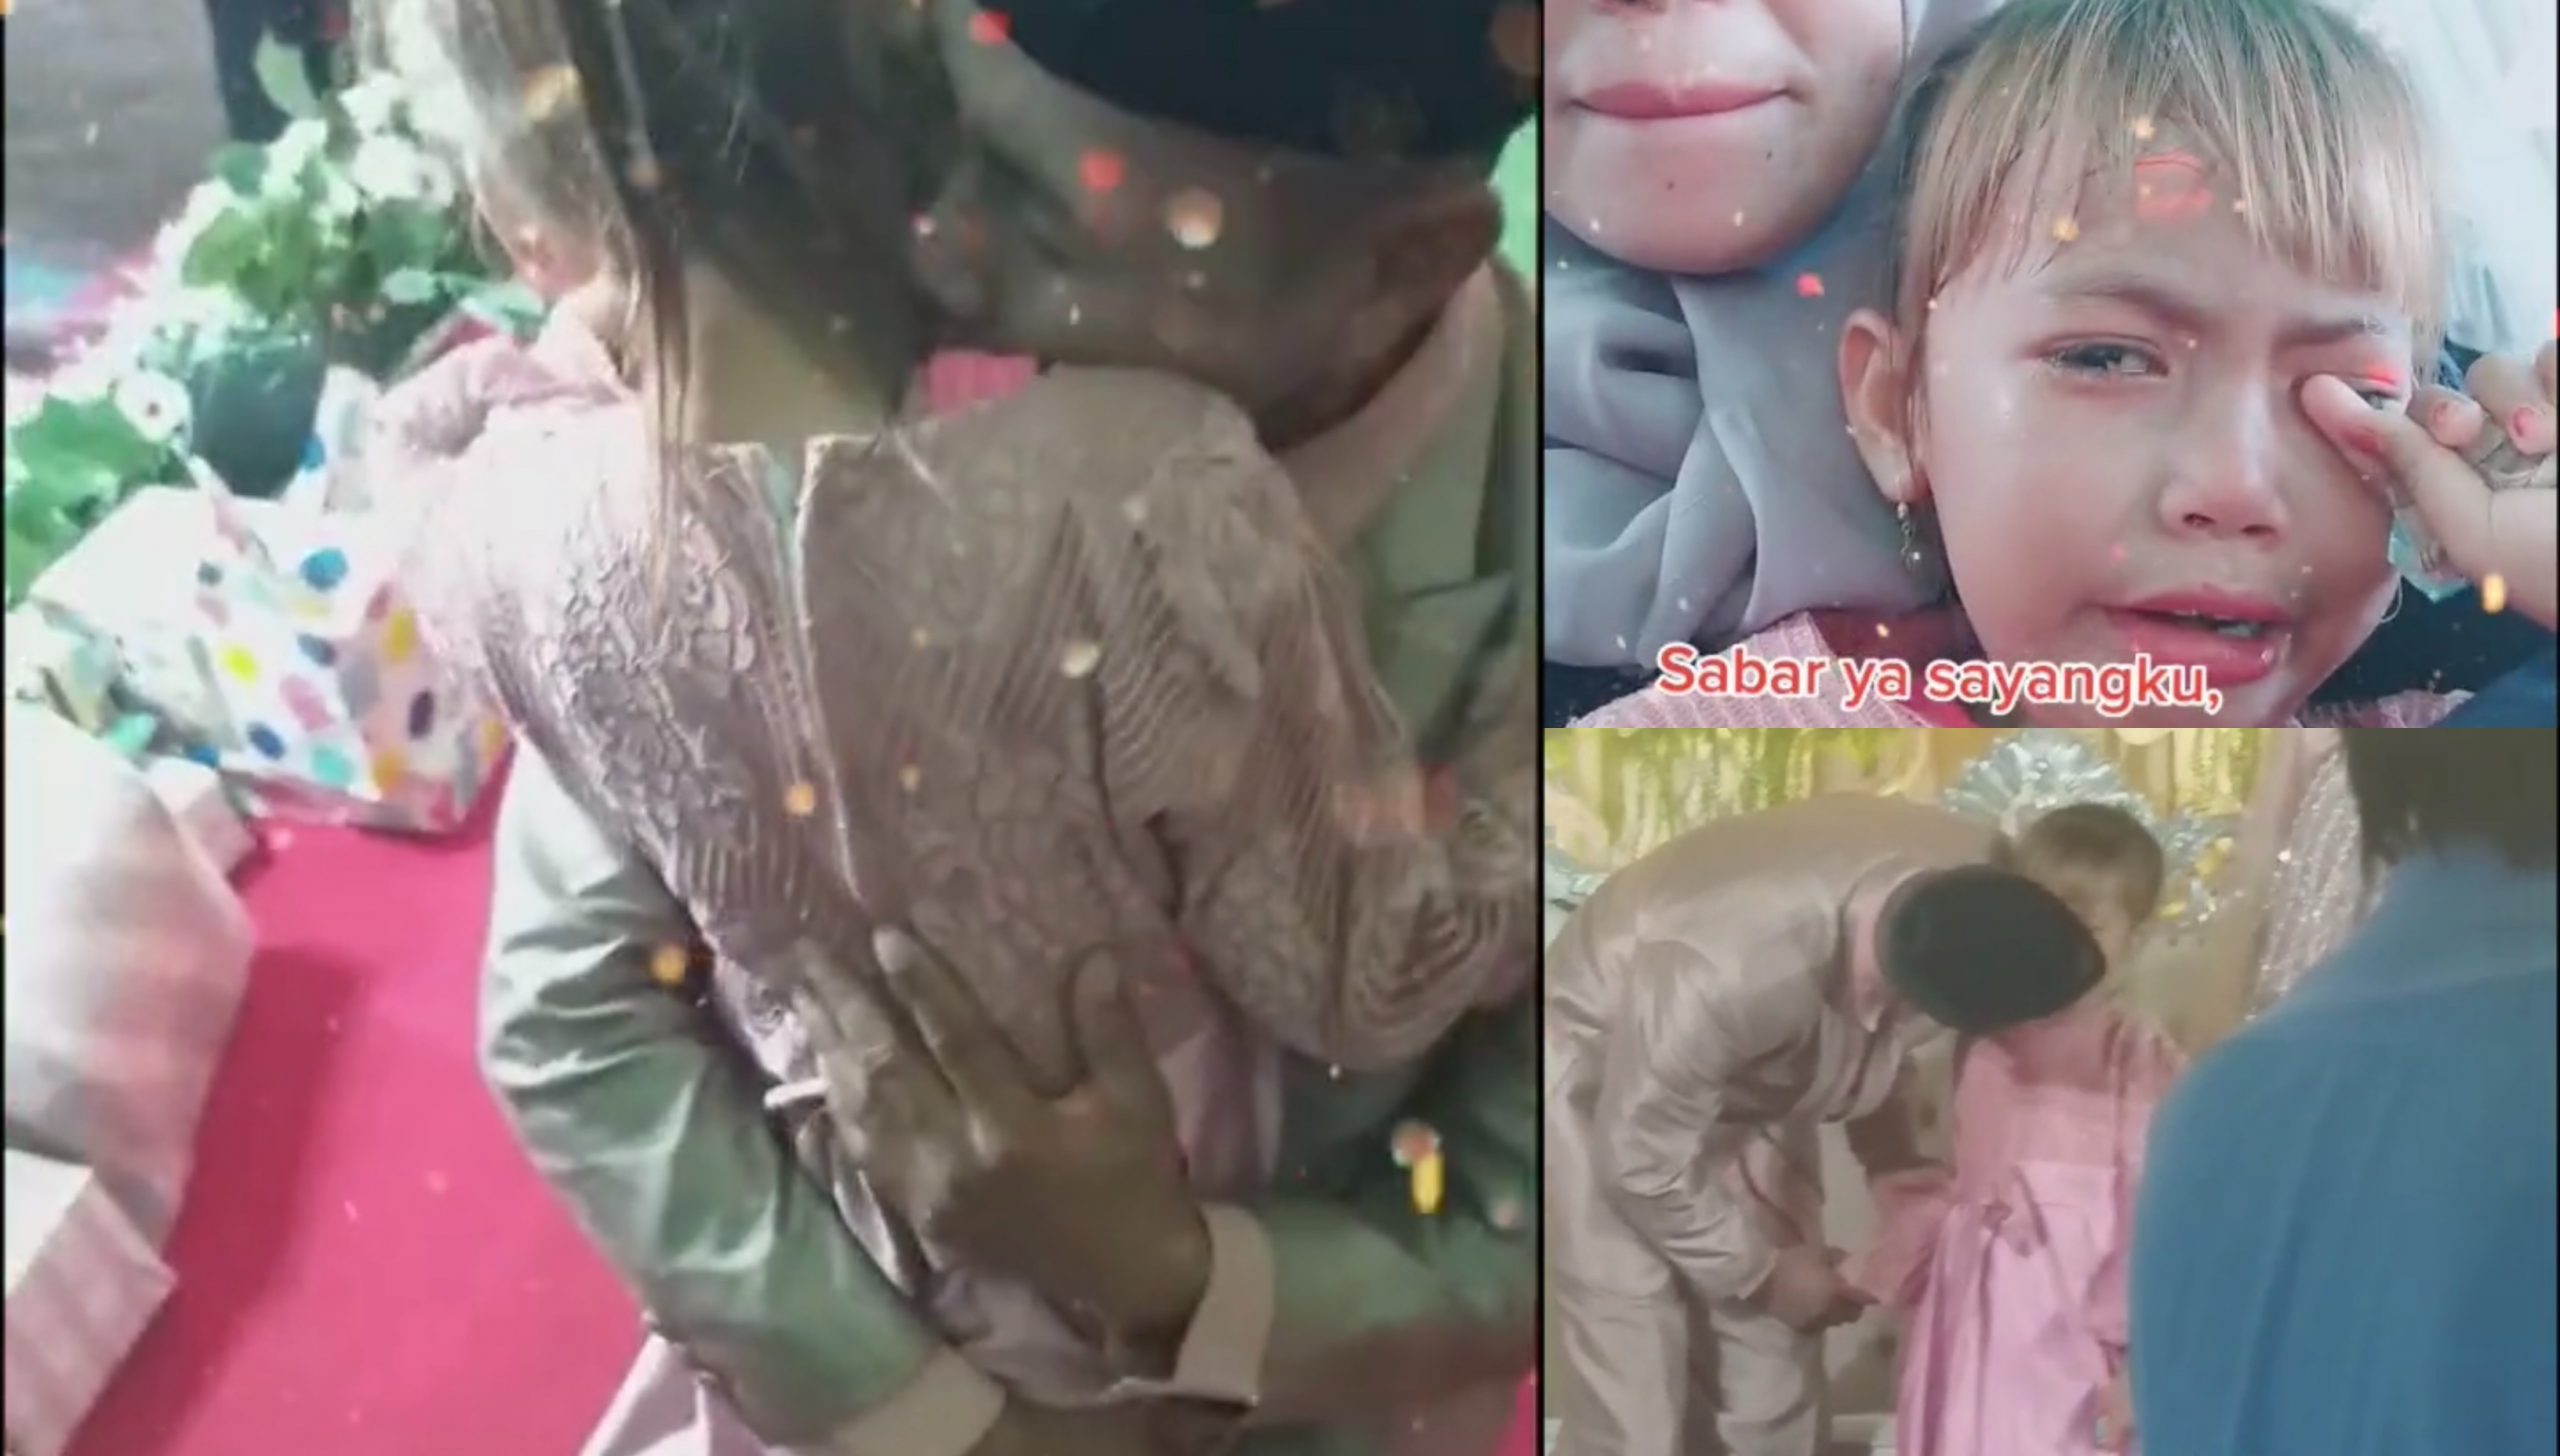 [VIDEO] Datang Majlis Kahwin, Reaksi Anak Kecil Ini Tengok Bapa Kandung Naik Pelamin Bikin Sebak